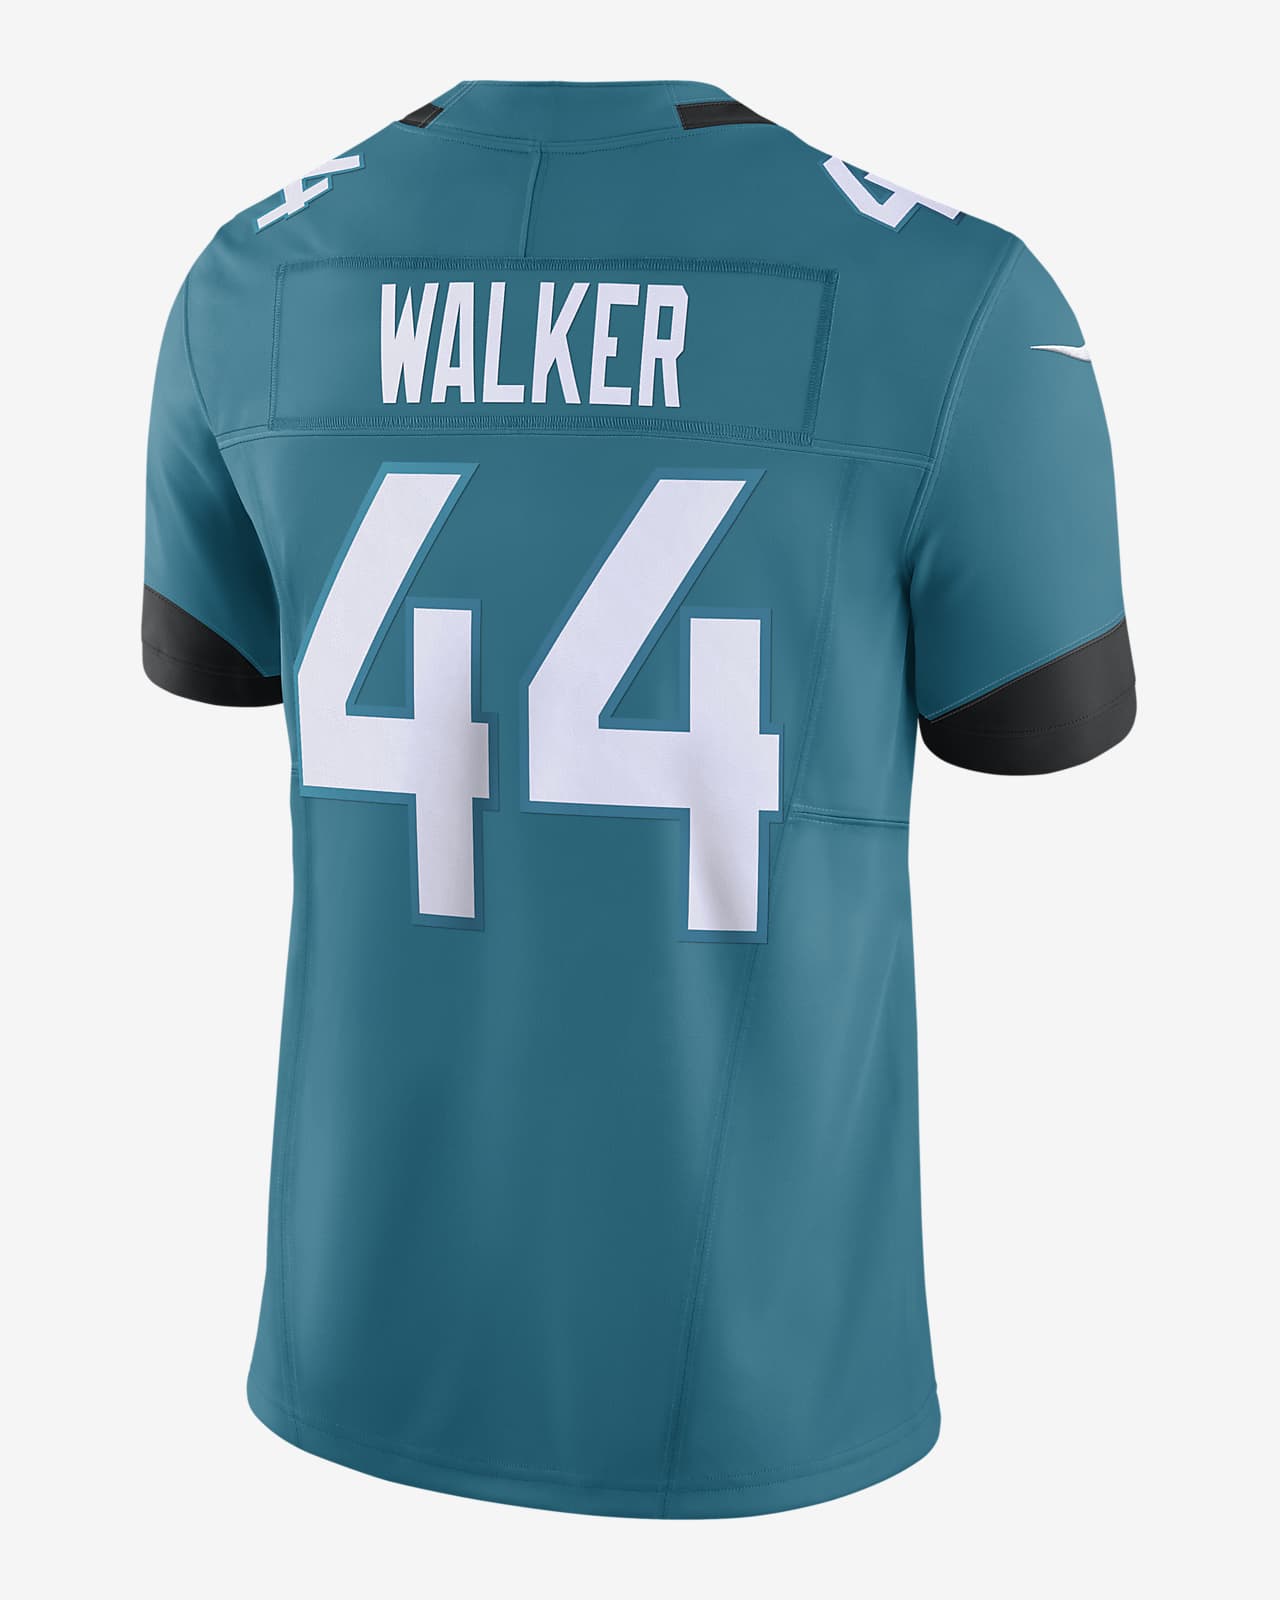 NFL - Camiseta Unisex Negra/Azul - Fútbol Americano Jacksonville Jaguars